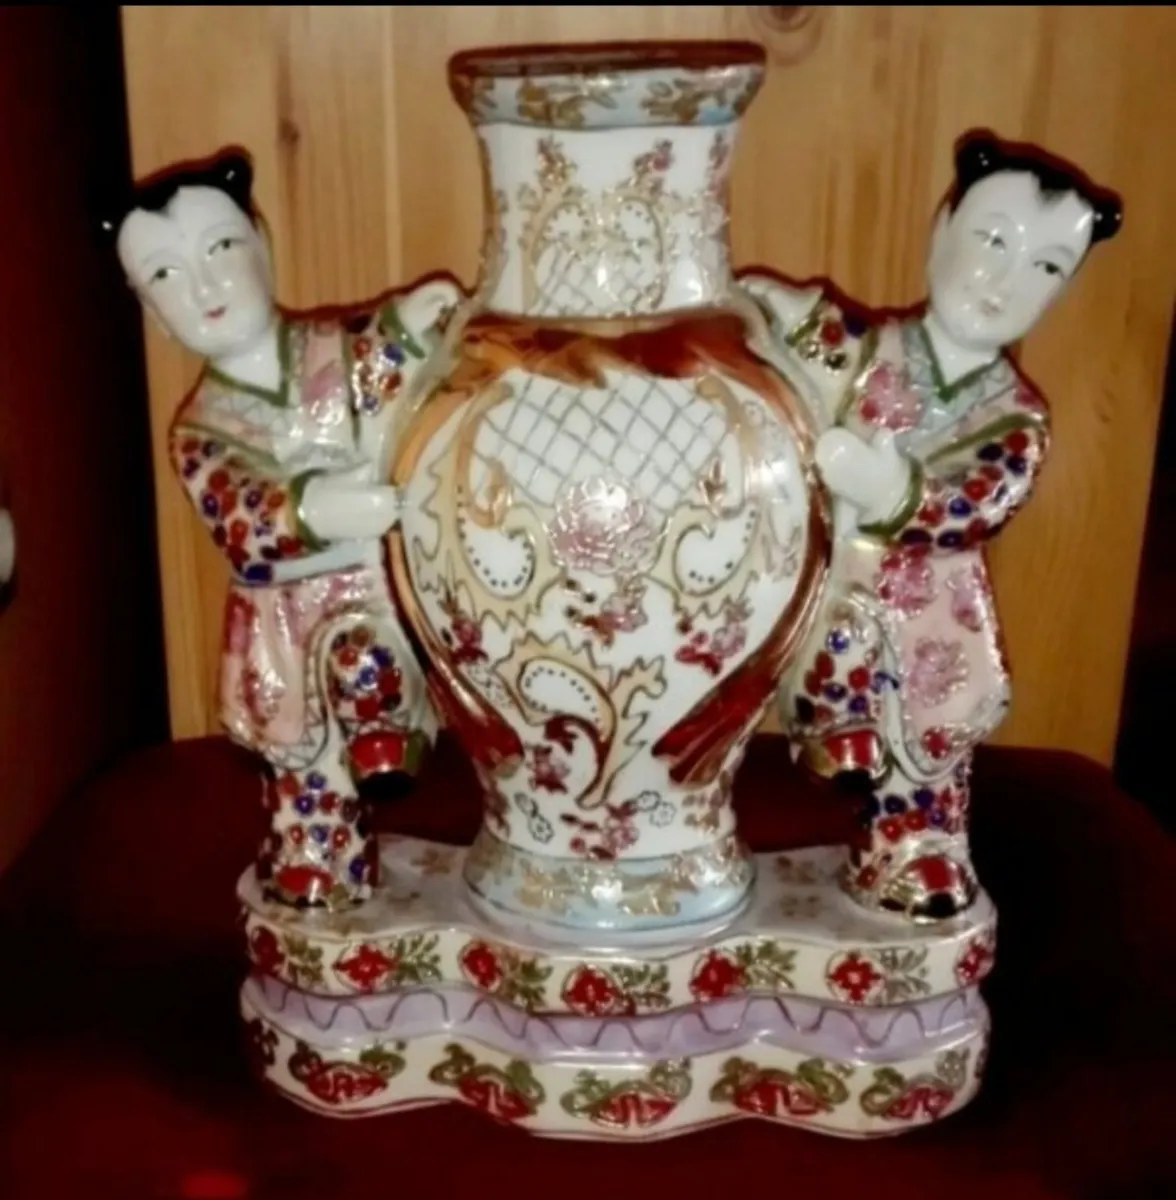 Stunning Antique Chinese candleholder - Image 1